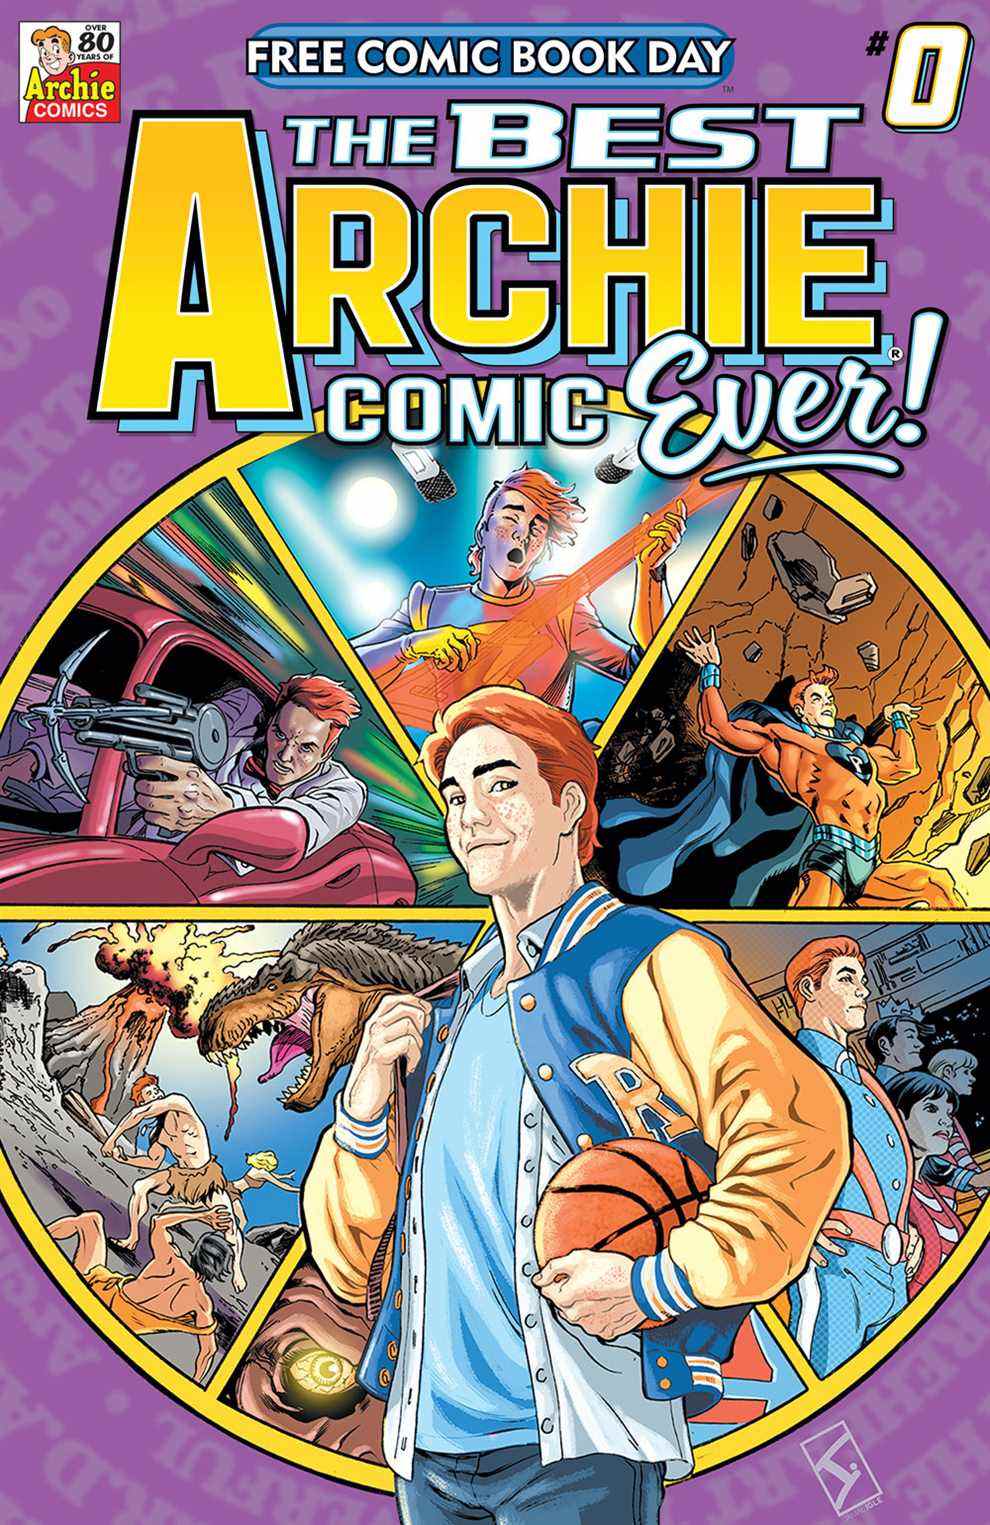 La meilleure couverture de la bande dessinée Archie de tous les temps # 0